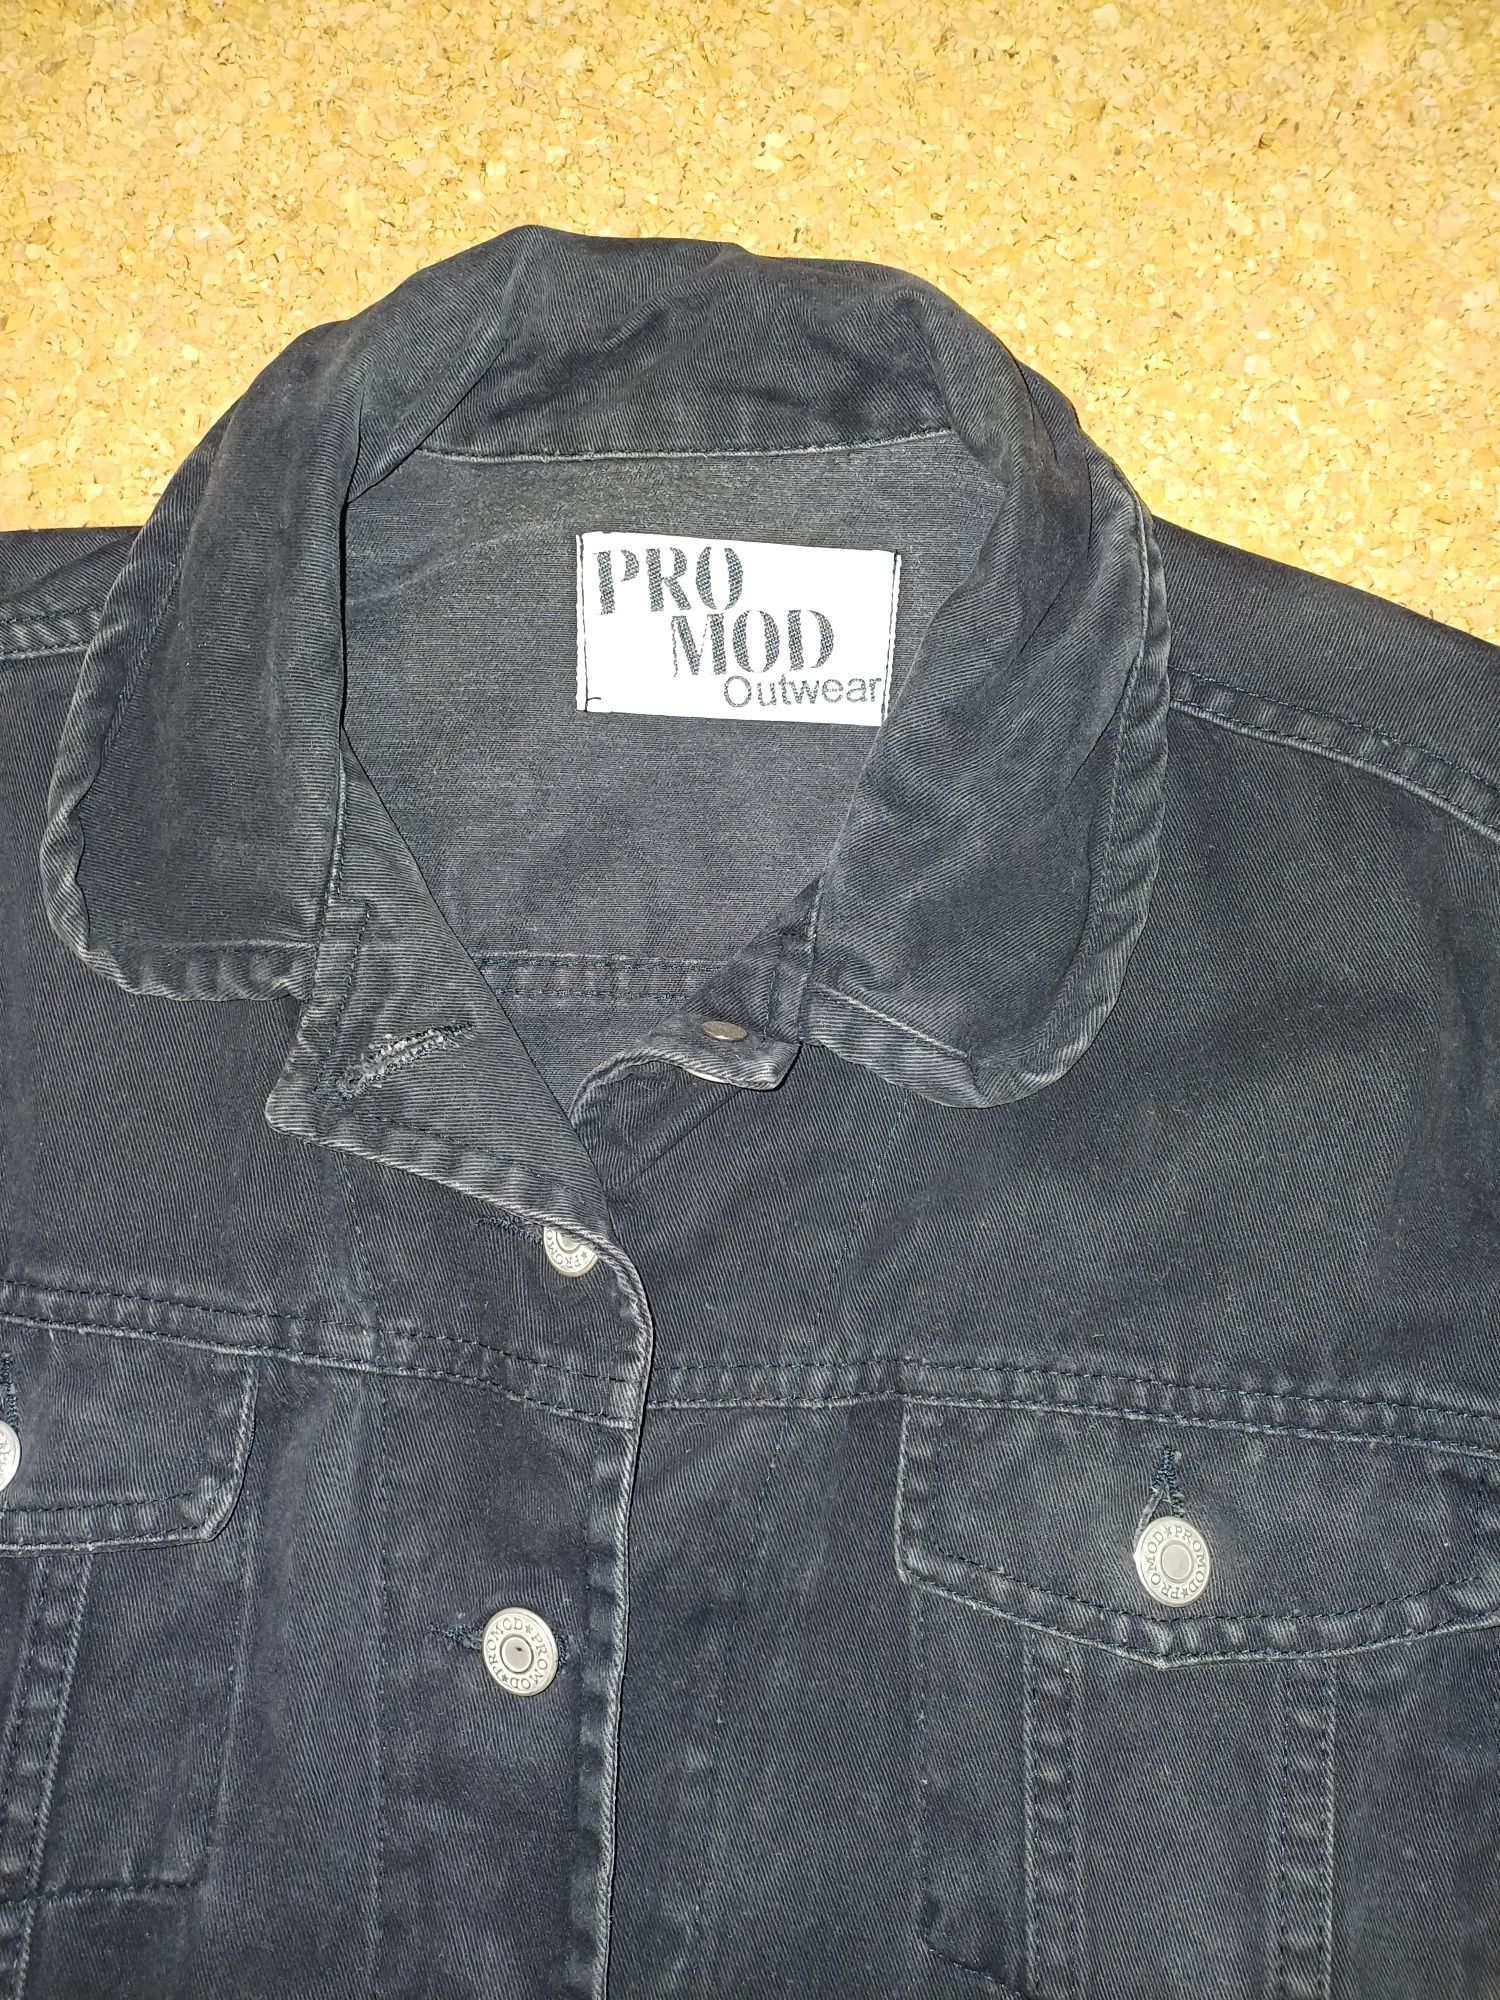 Blusão de ganga Promod, Vintage, anos 90, senhora